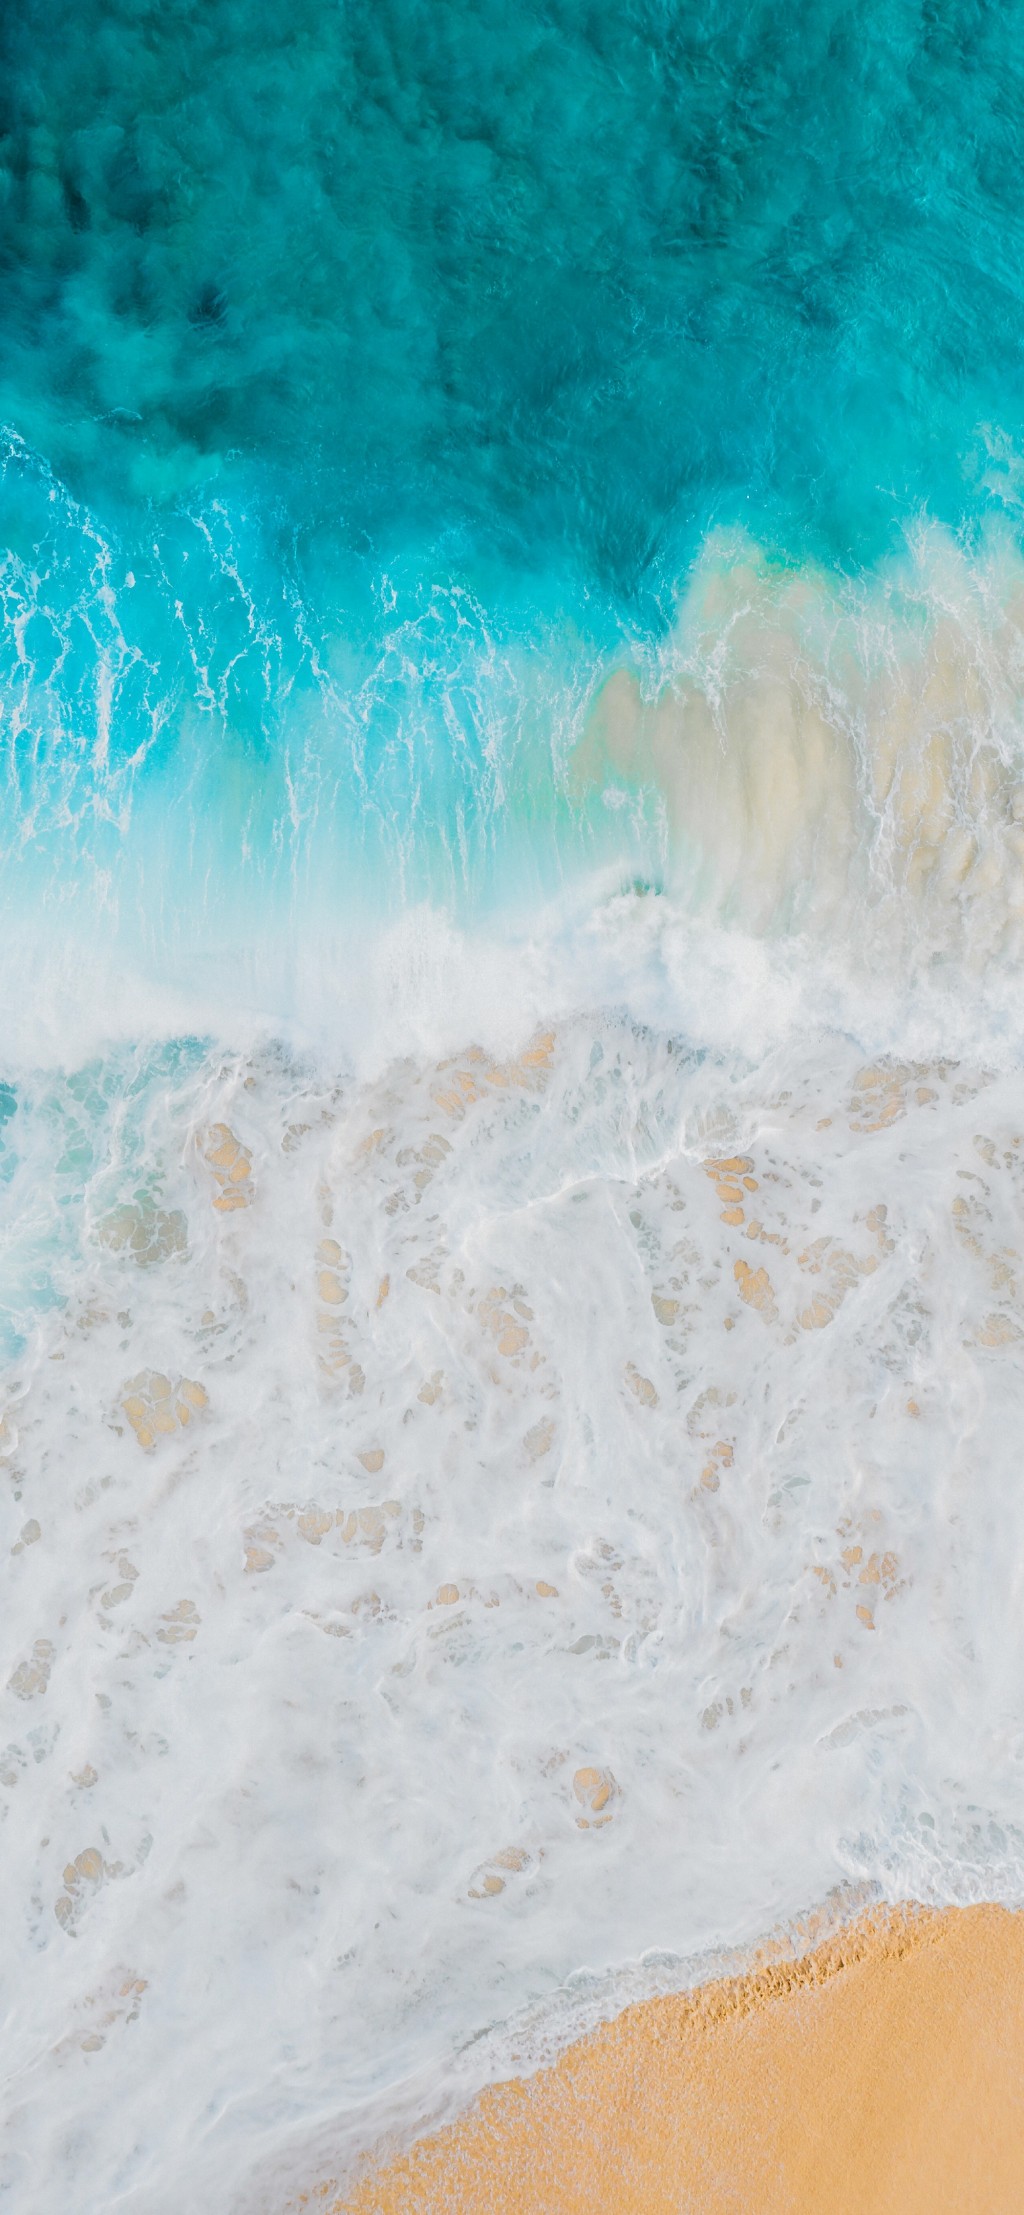 大海系列清新自然风景手机壁纸